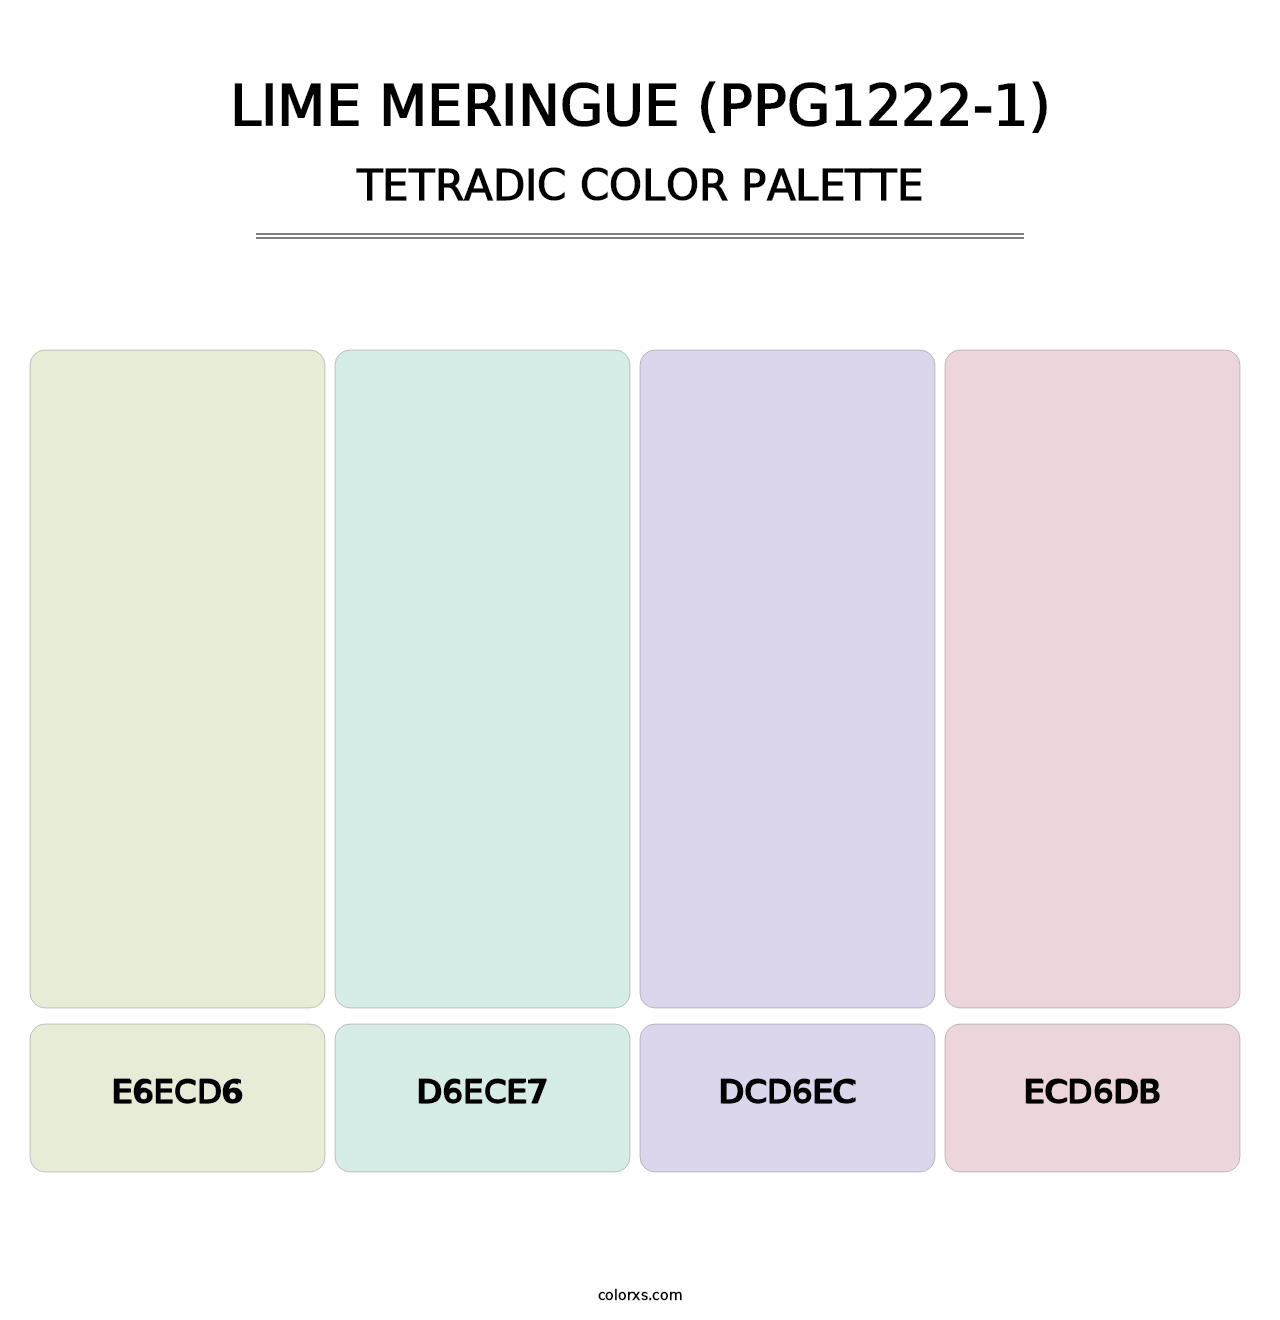 Lime Meringue (PPG1222-1) - Tetradic Color Palette